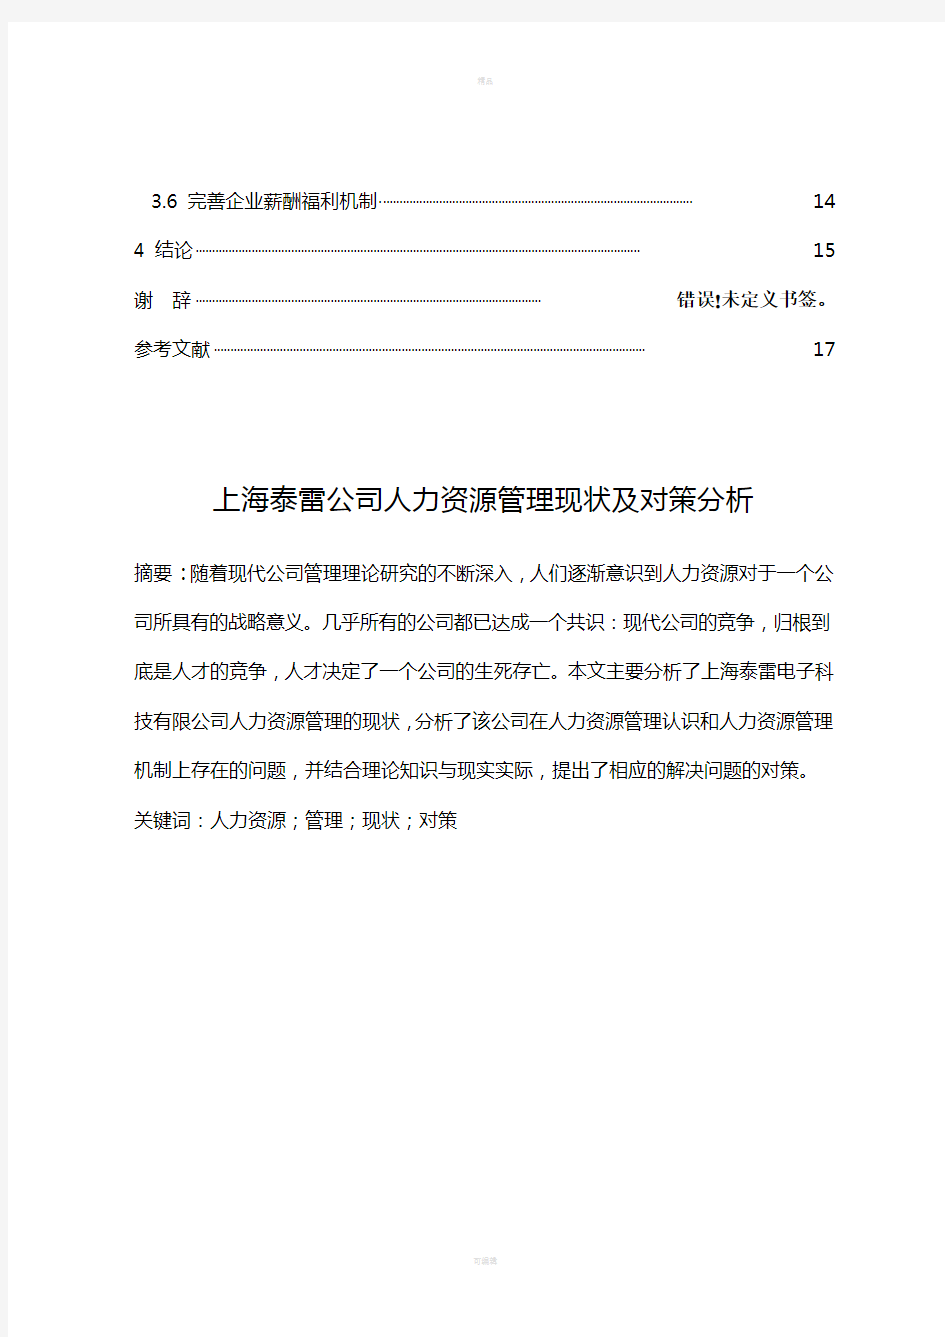 上海泰雷公司人力资源管理现状及对策分析